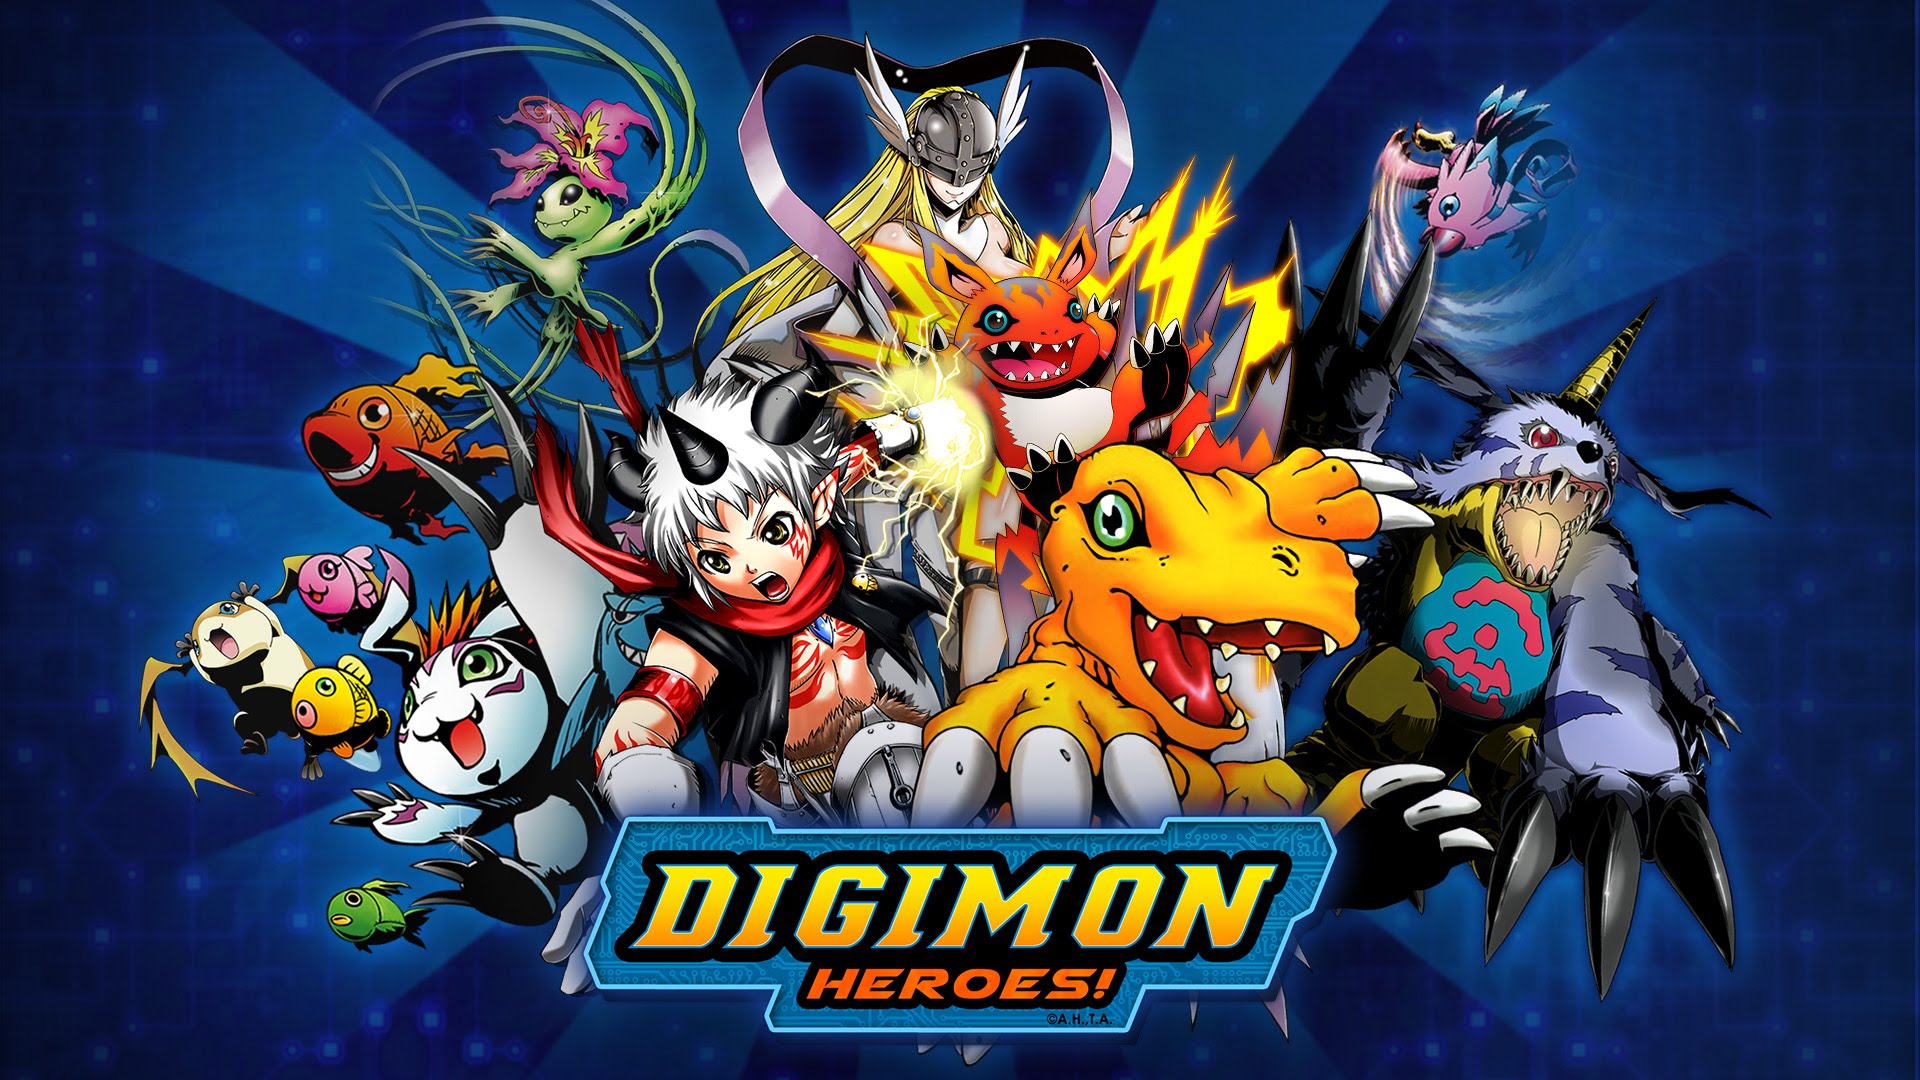 15 Quality Digimon Wallpapers, Anime & Manga